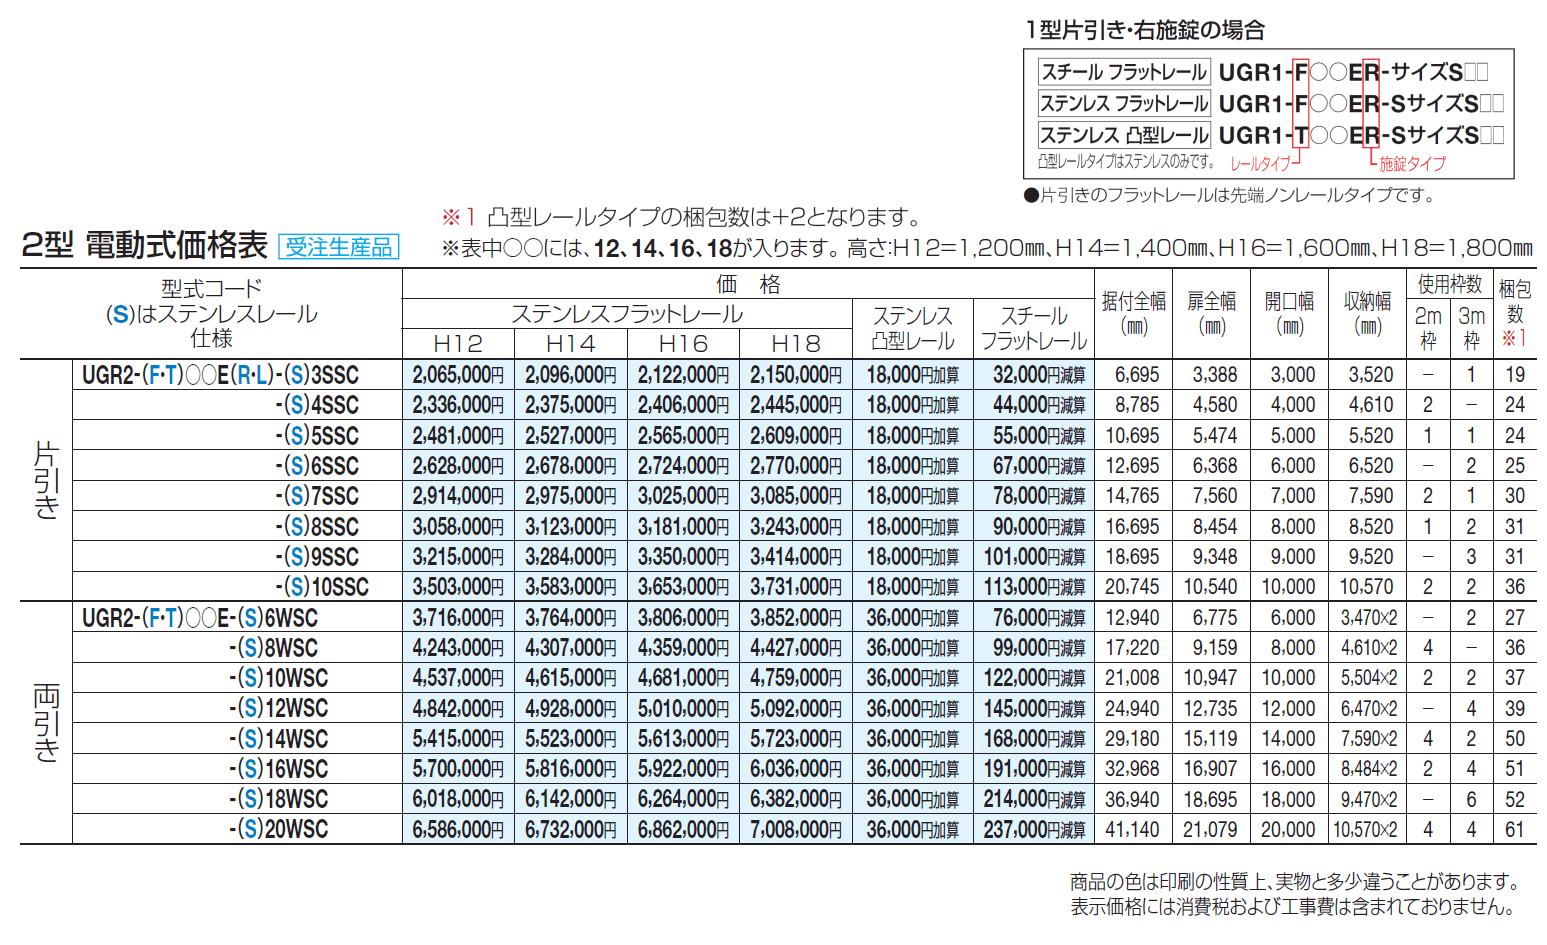 ユニットラインGR2型(電動式)_価格_1